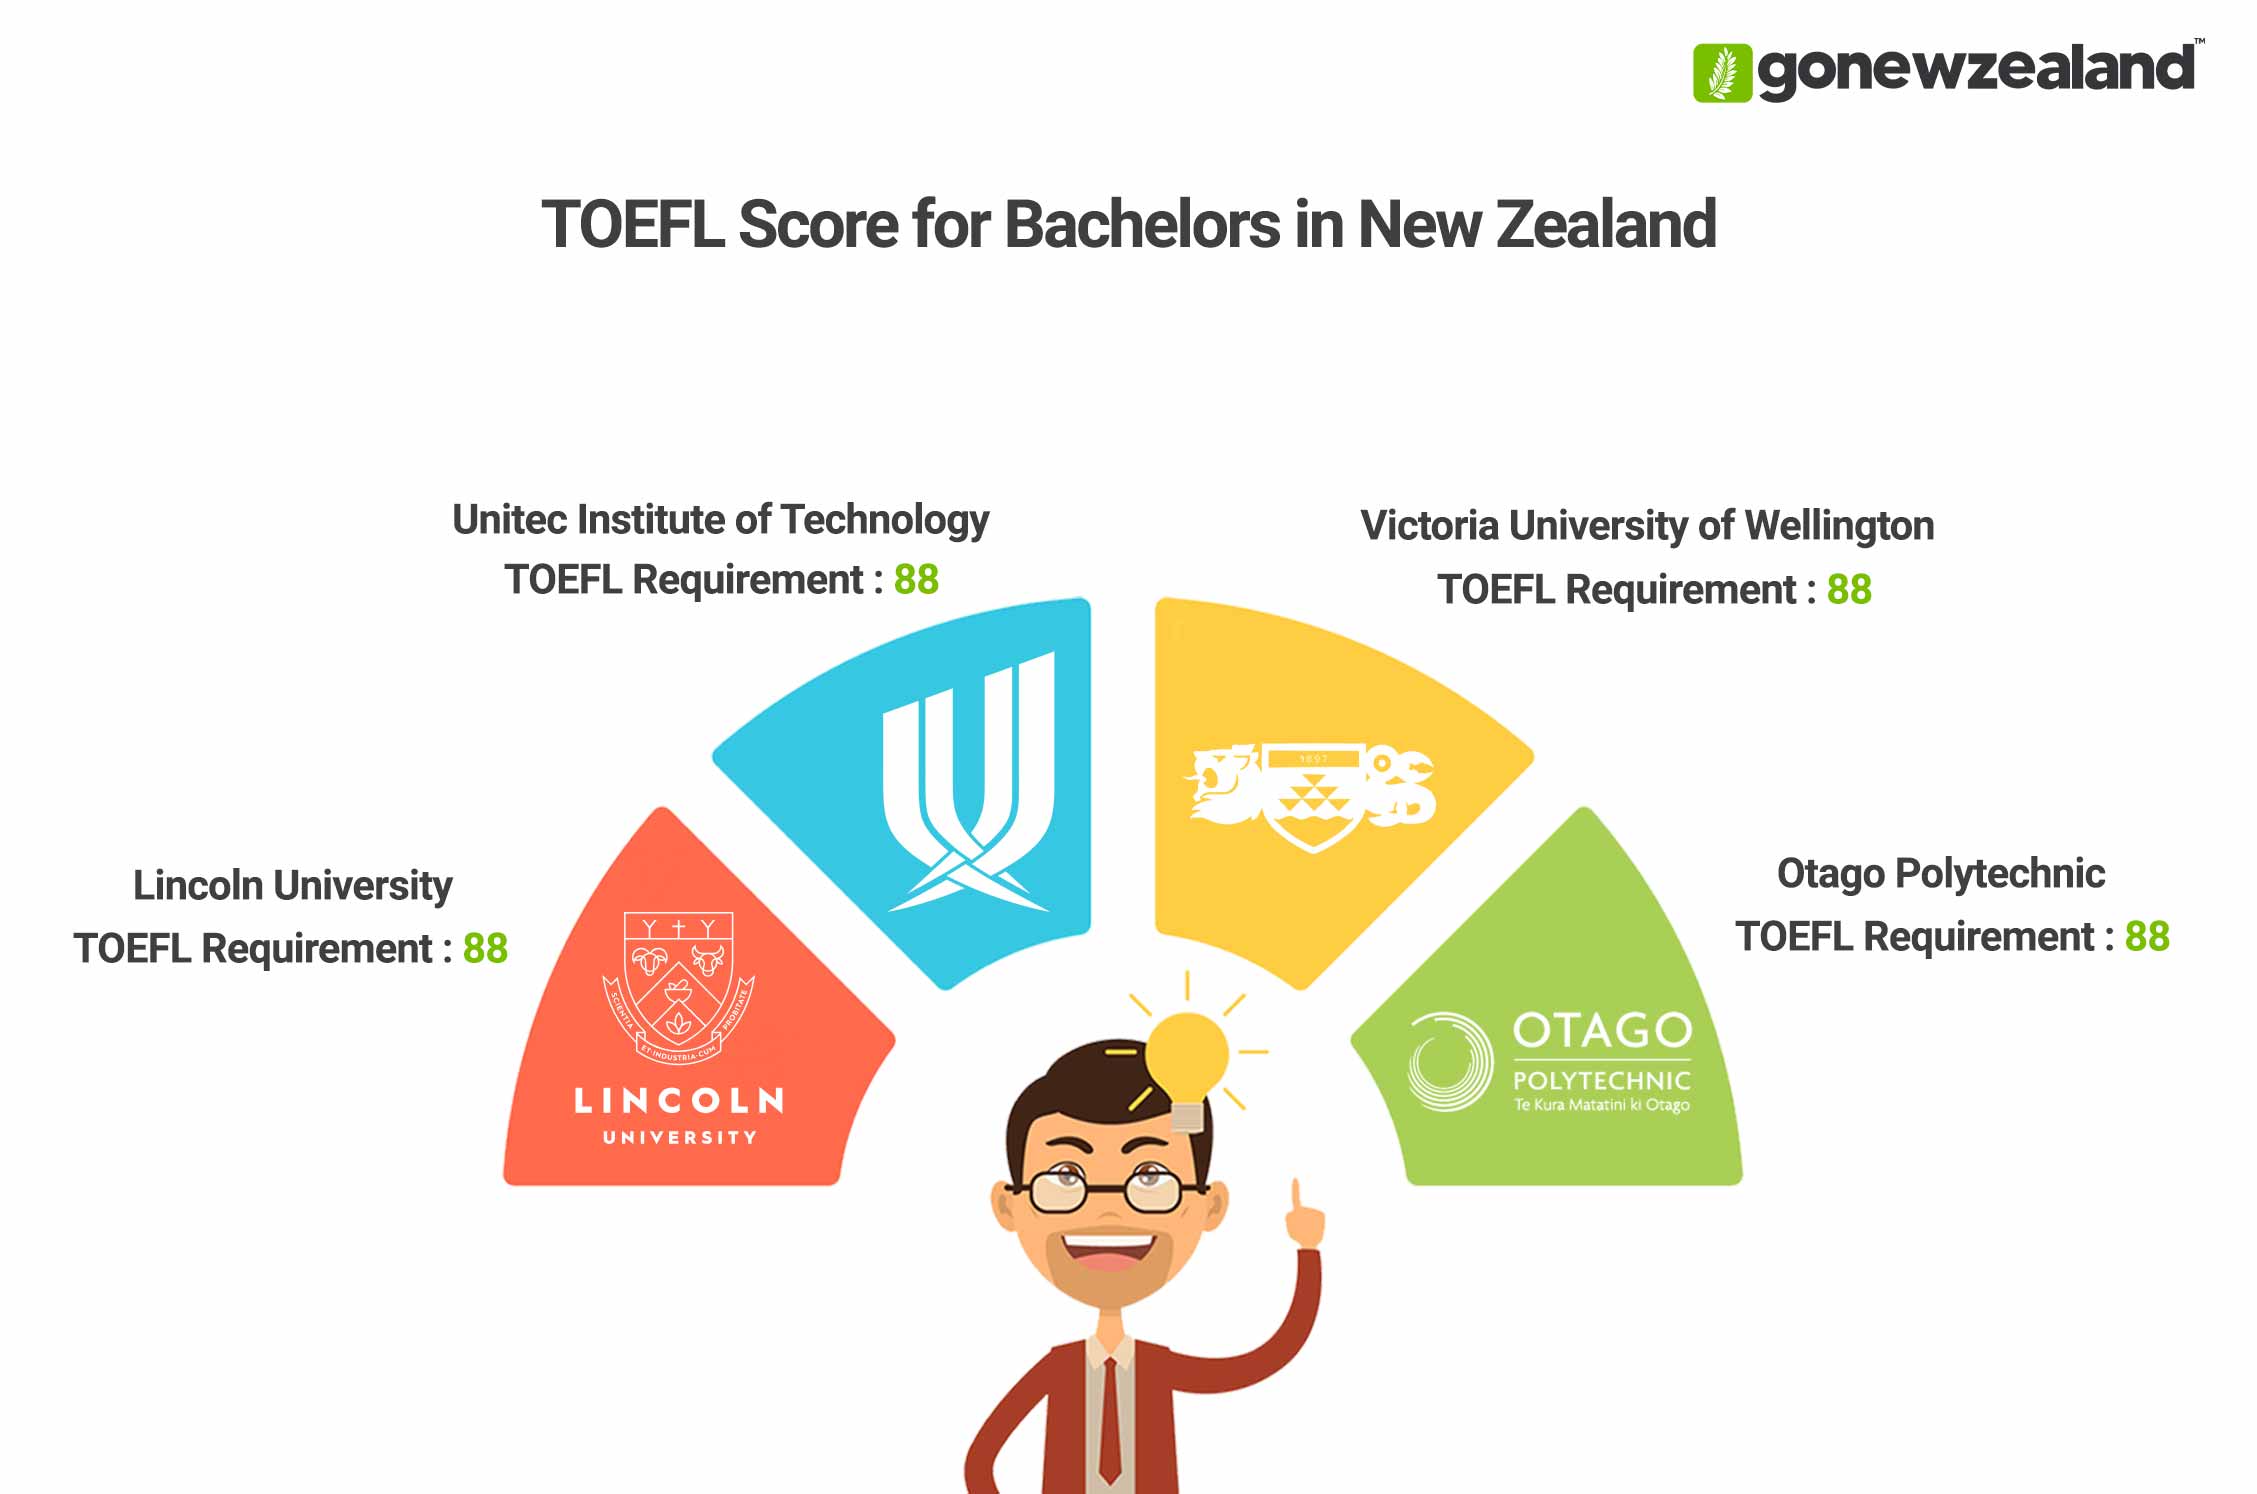 Bachelors in New Zealand TOEFL Score